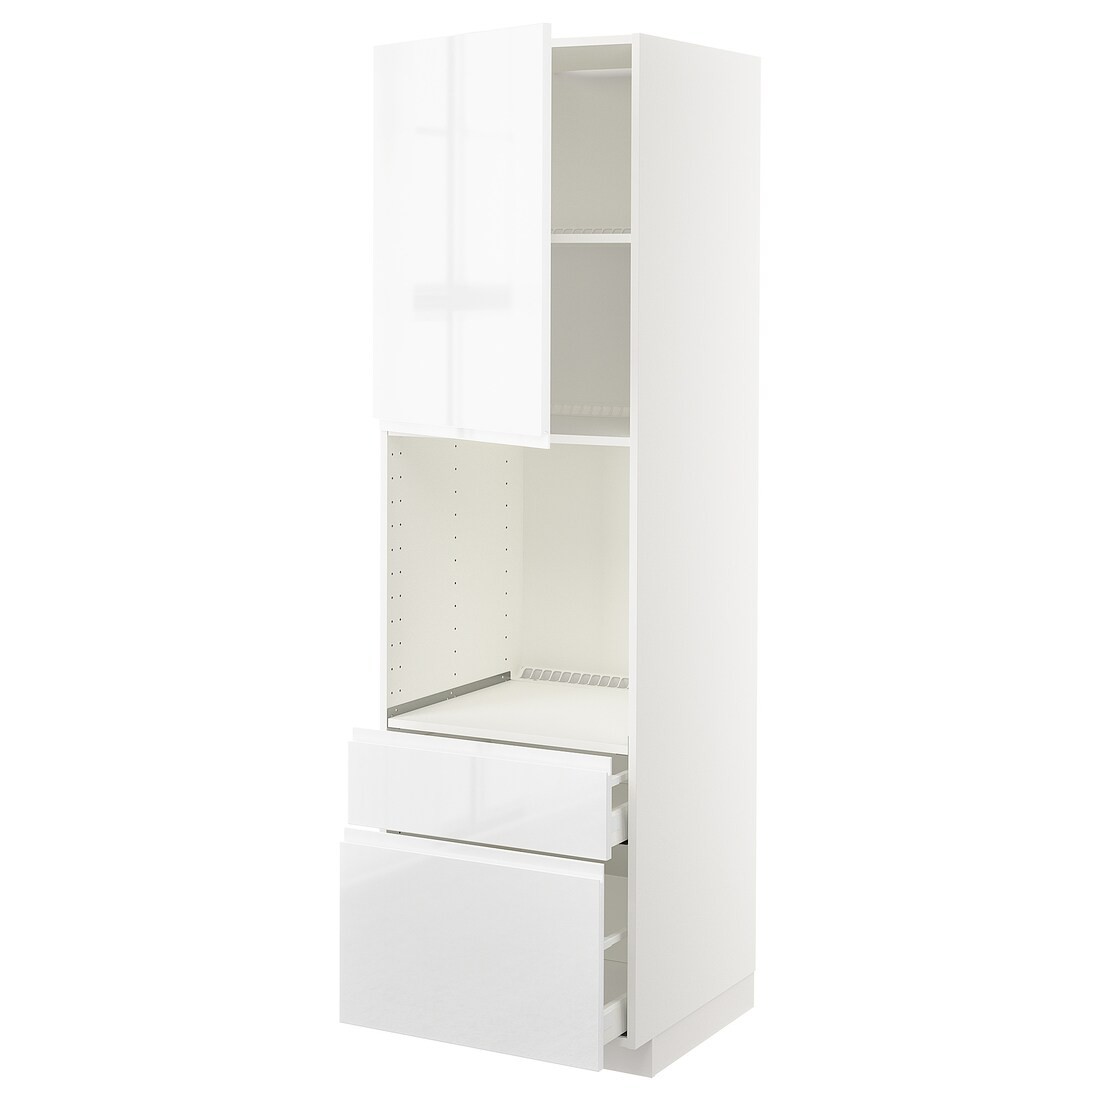 METOD МЕТОД / MAXIMERA МАКСИМЕРА Высокий шкаф для духовки с дверцей / ящиками, белый / Voxtorp глянцевый / белый, 60x60x200 см